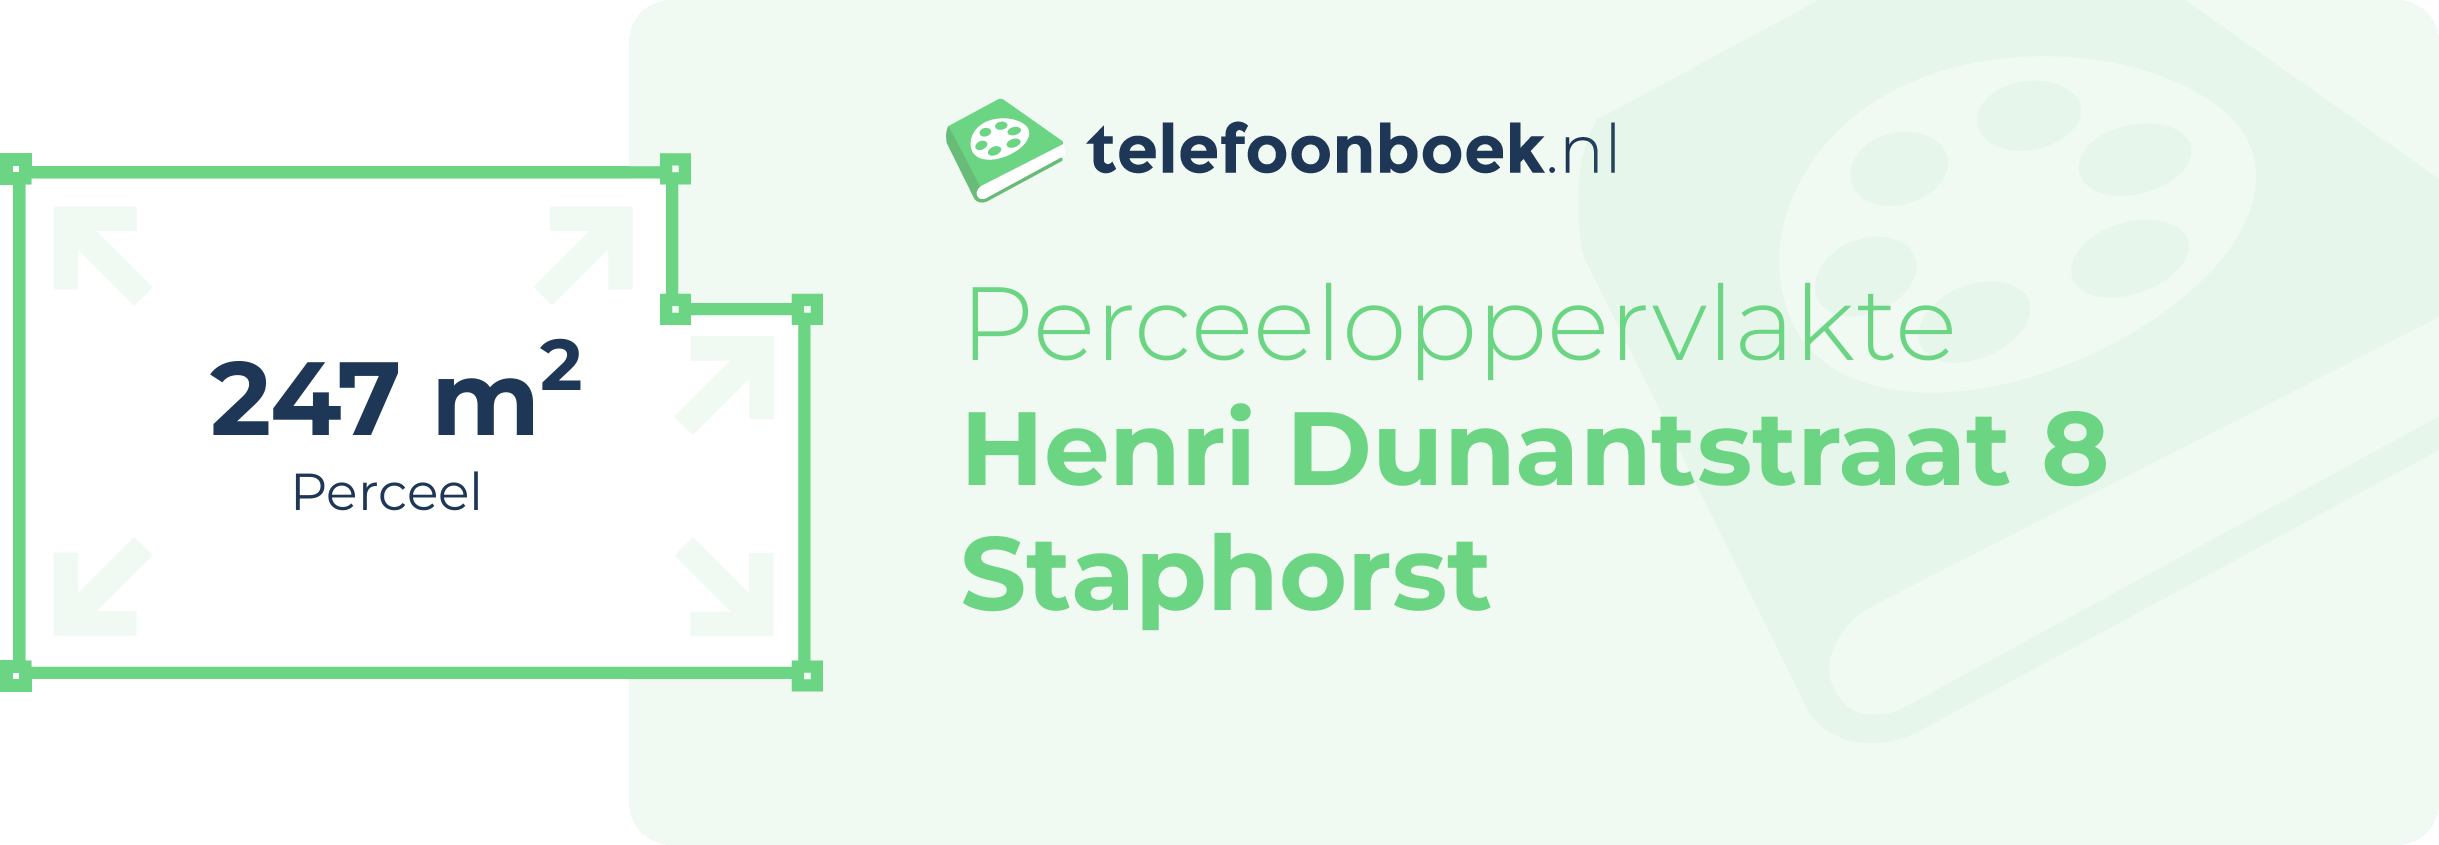 Perceeloppervlakte Henri Dunantstraat 8 Staphorst